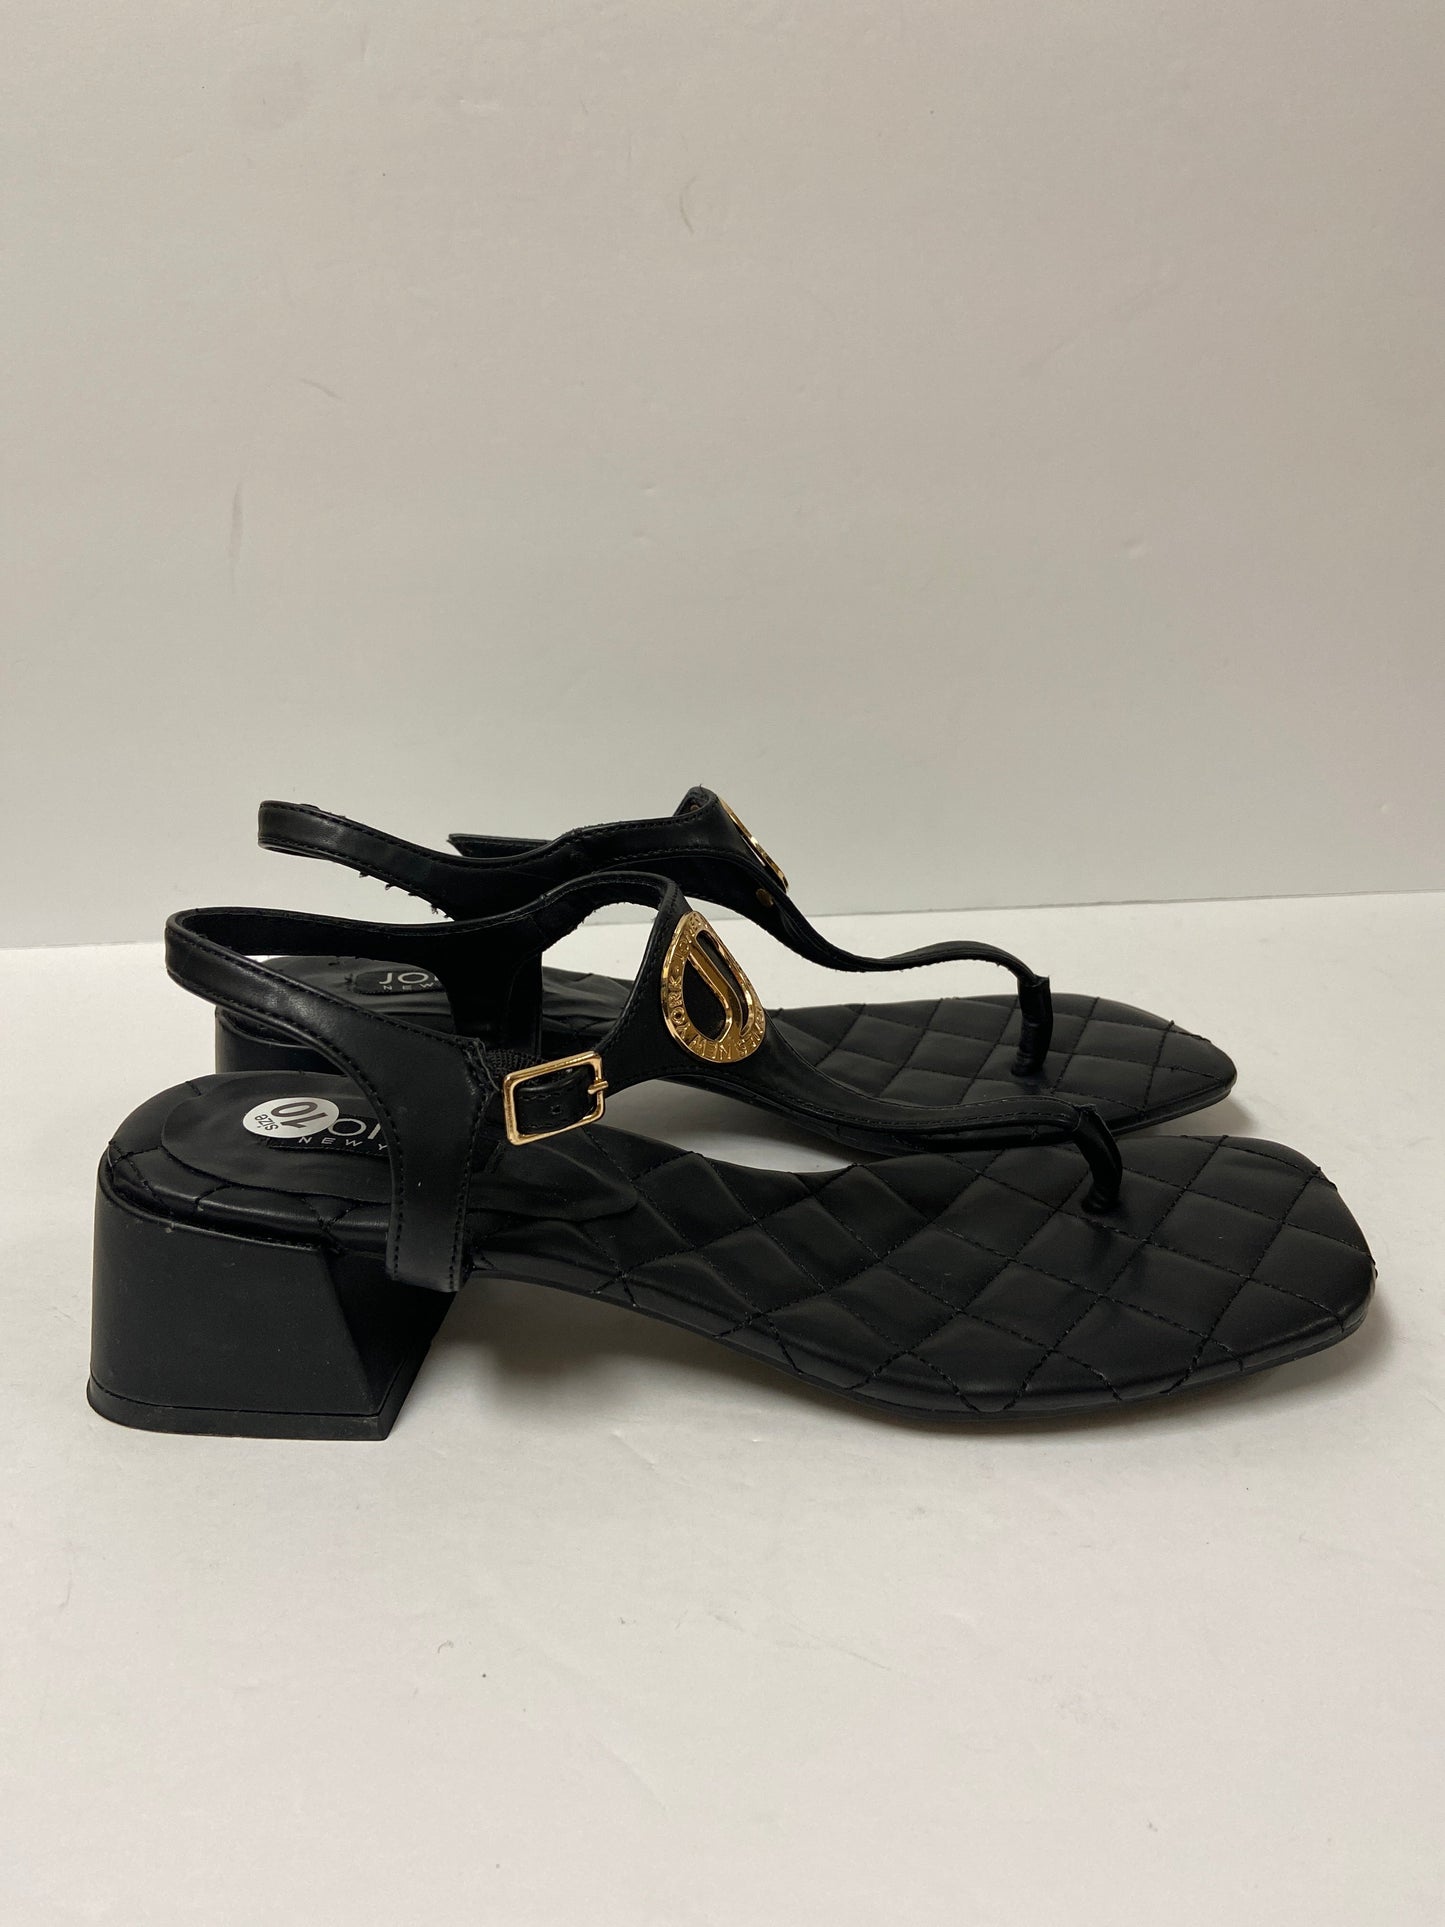 Sandals Heels Block By Jones New York  Size: 10